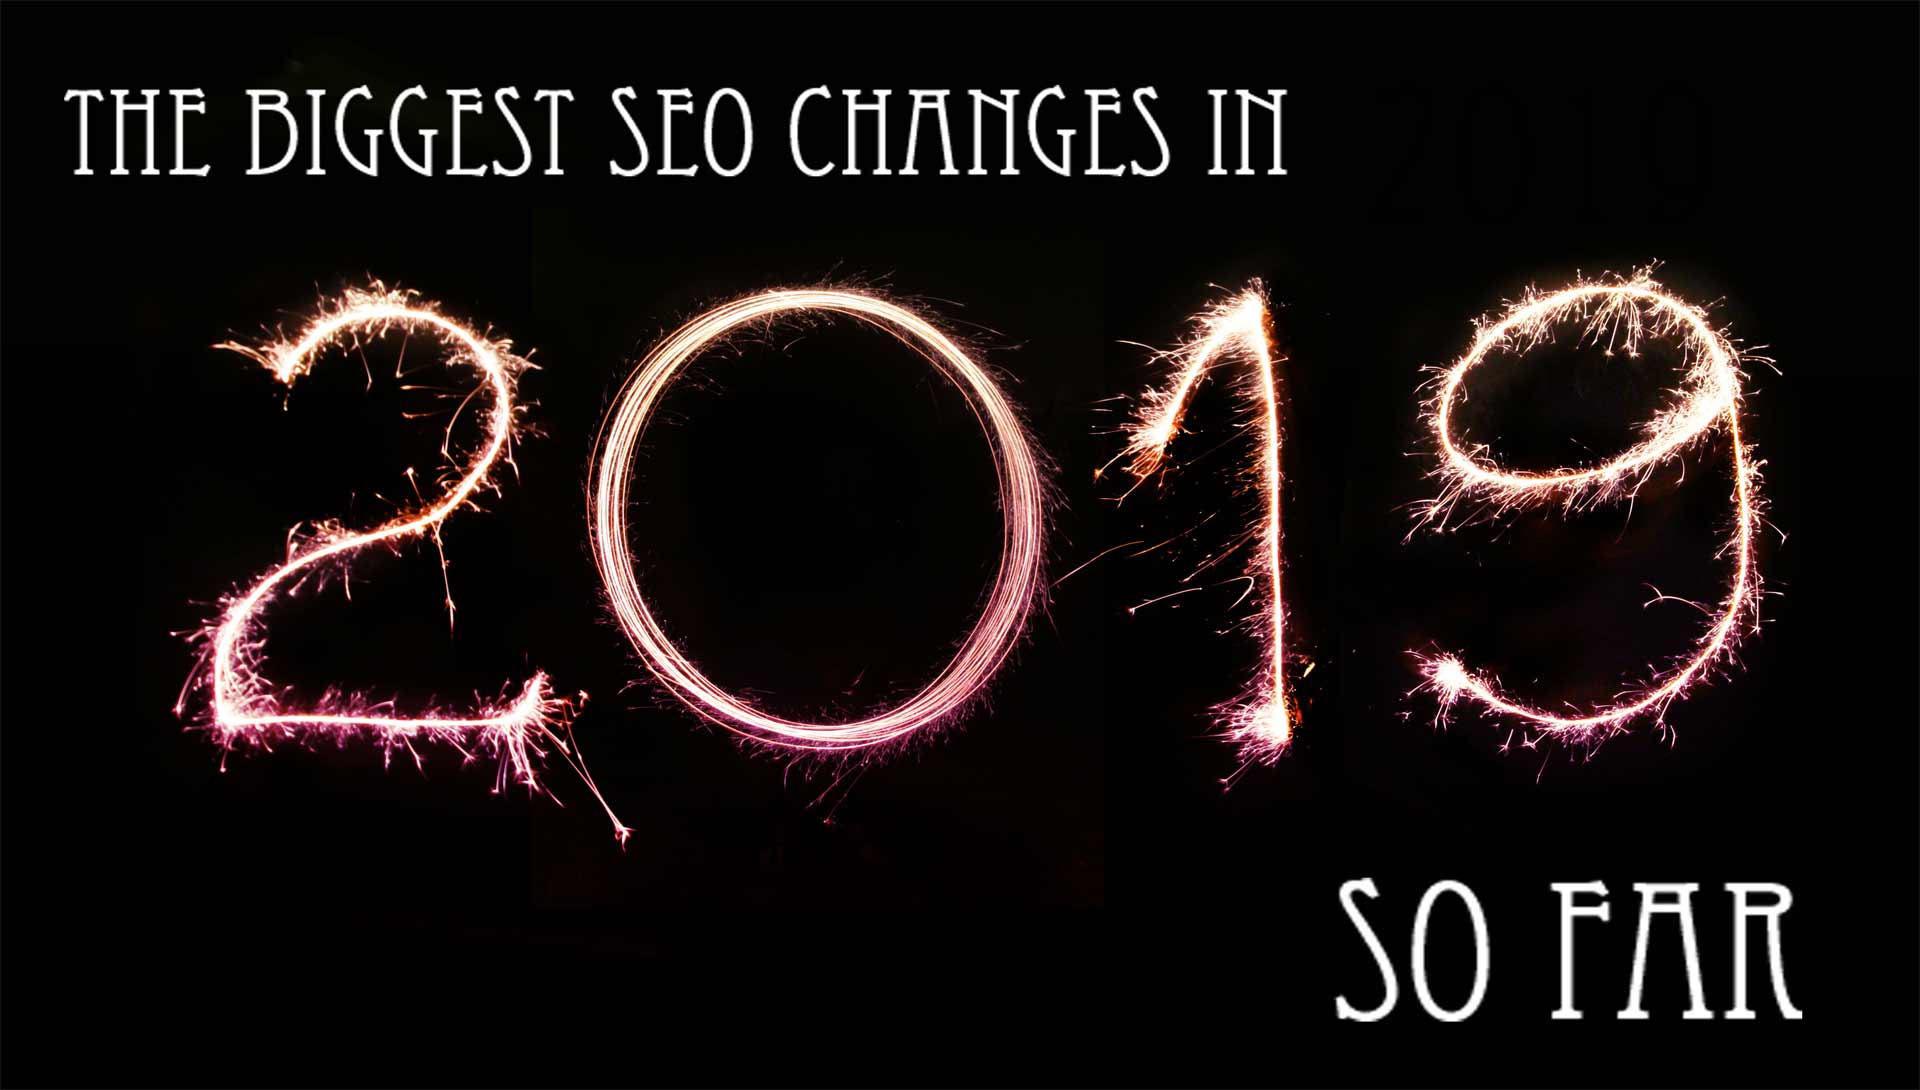 SEO changes 2019